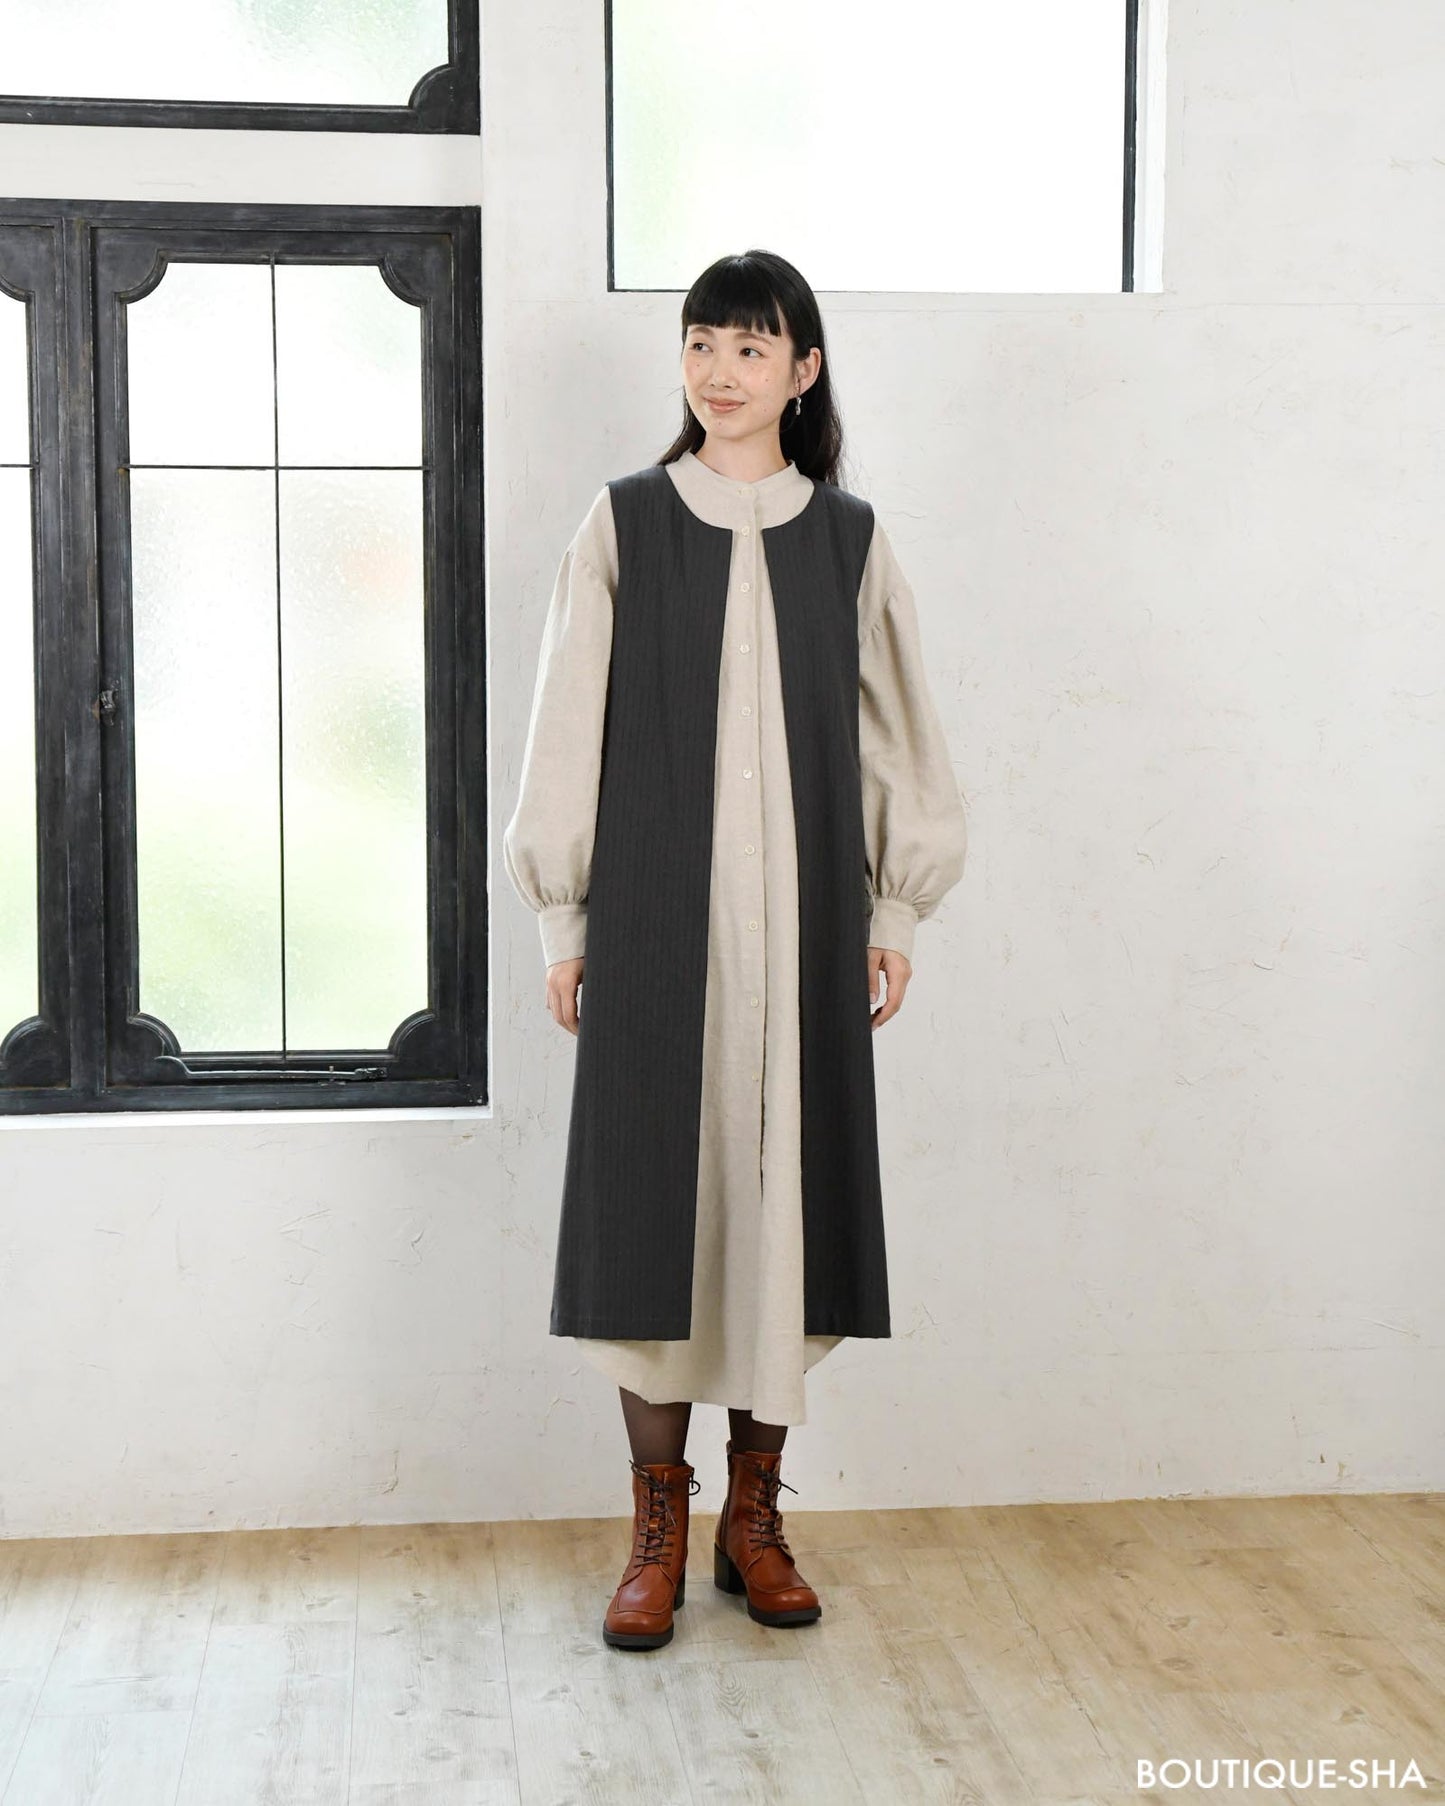 [日本] 成人服裝容易縫製2021-2022秋冬